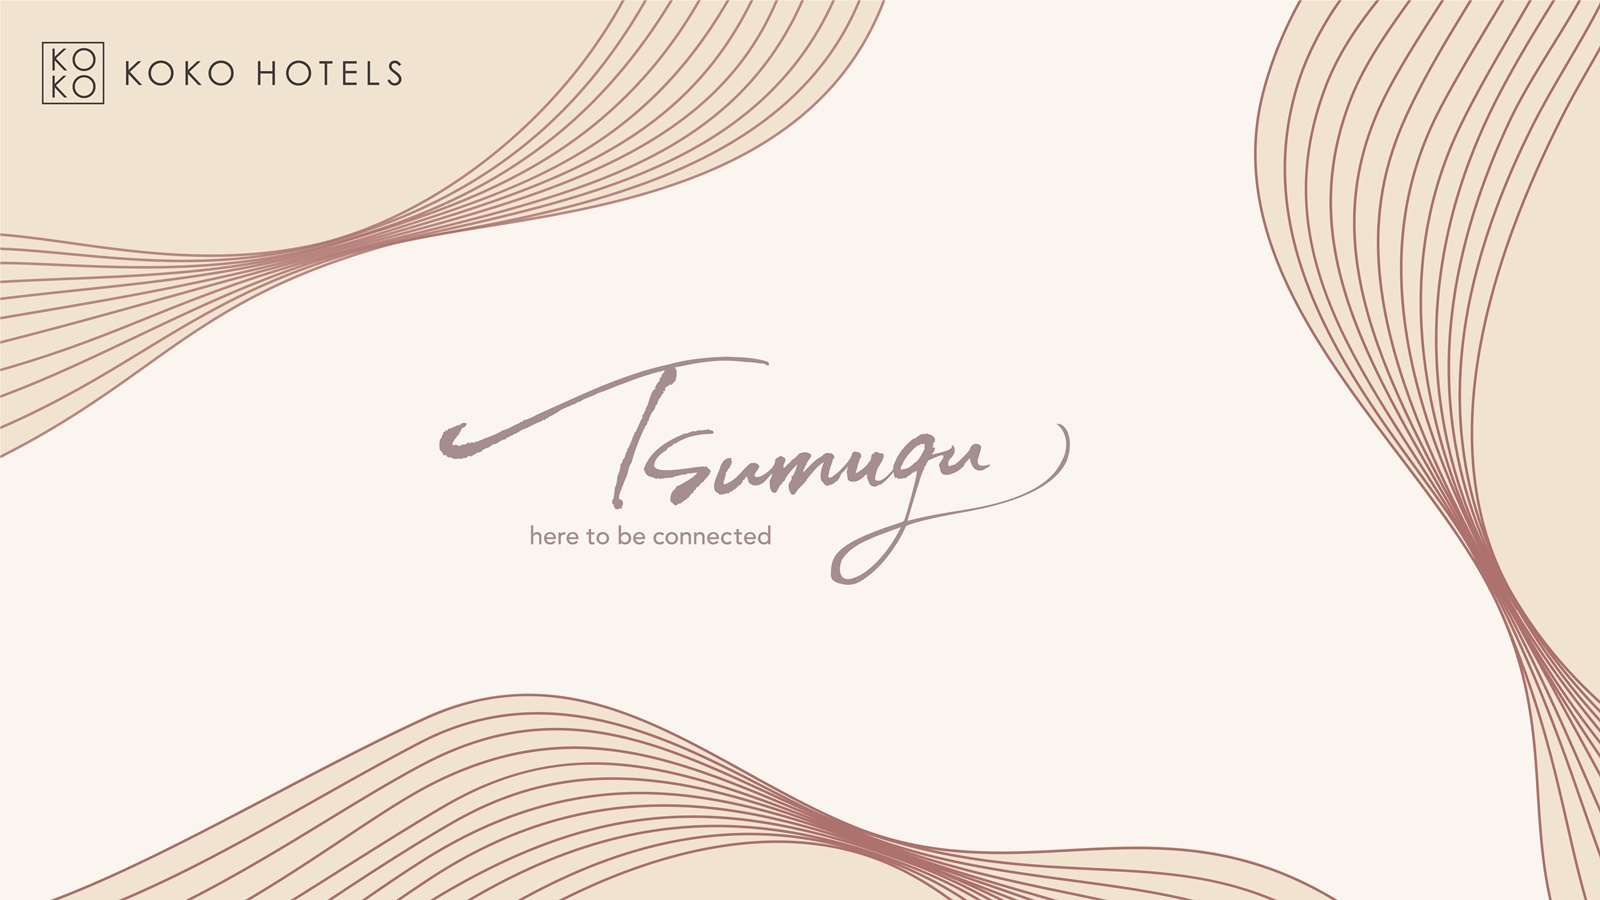 Brand Key Visual - Tsumugu